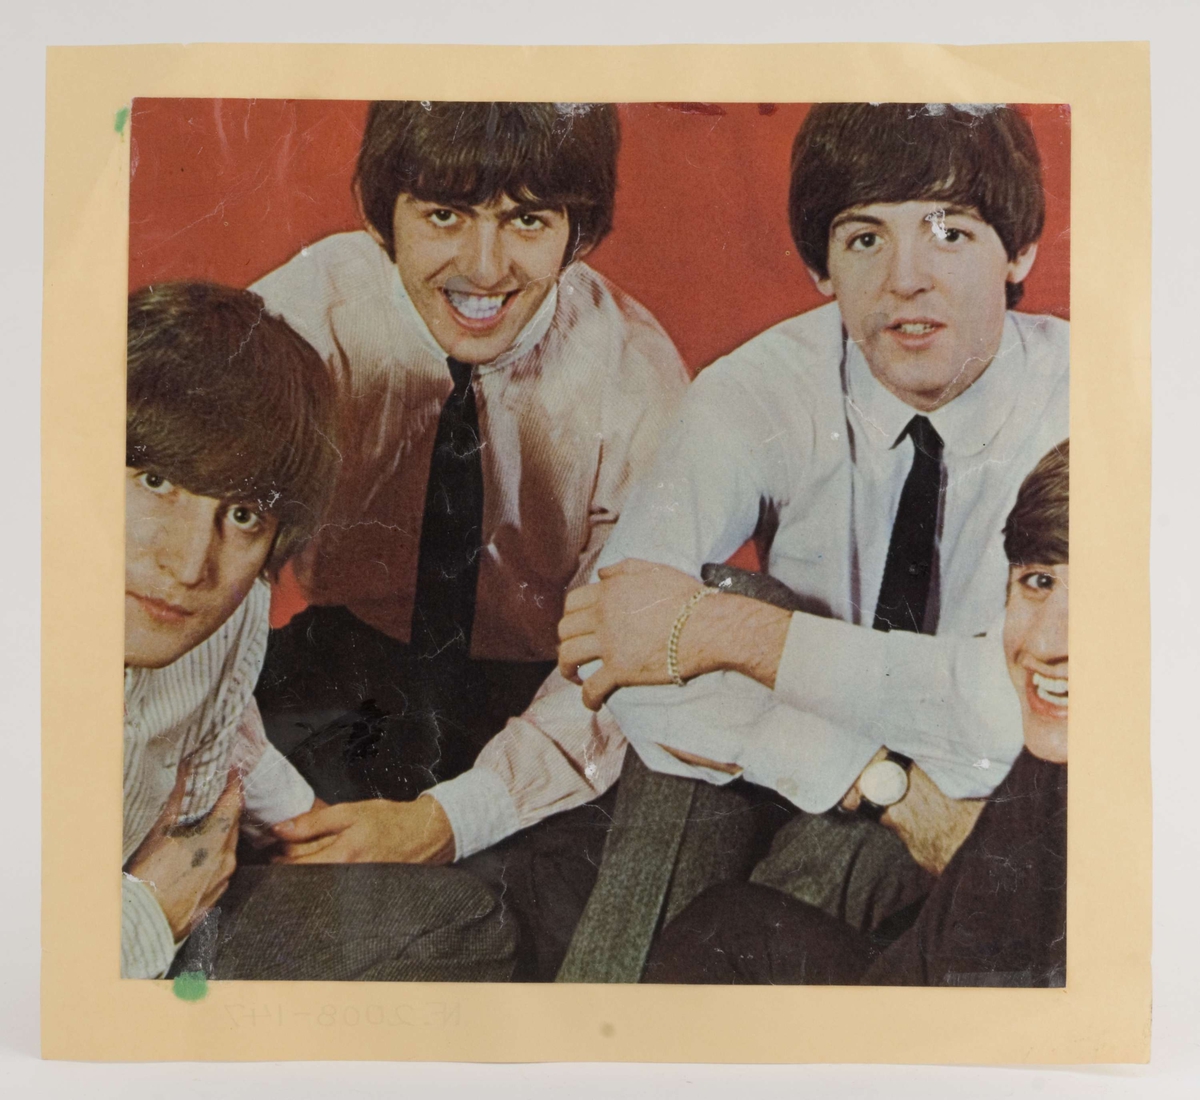 Fargefoto av Beatles-medlemmer limt på blekgult papir

